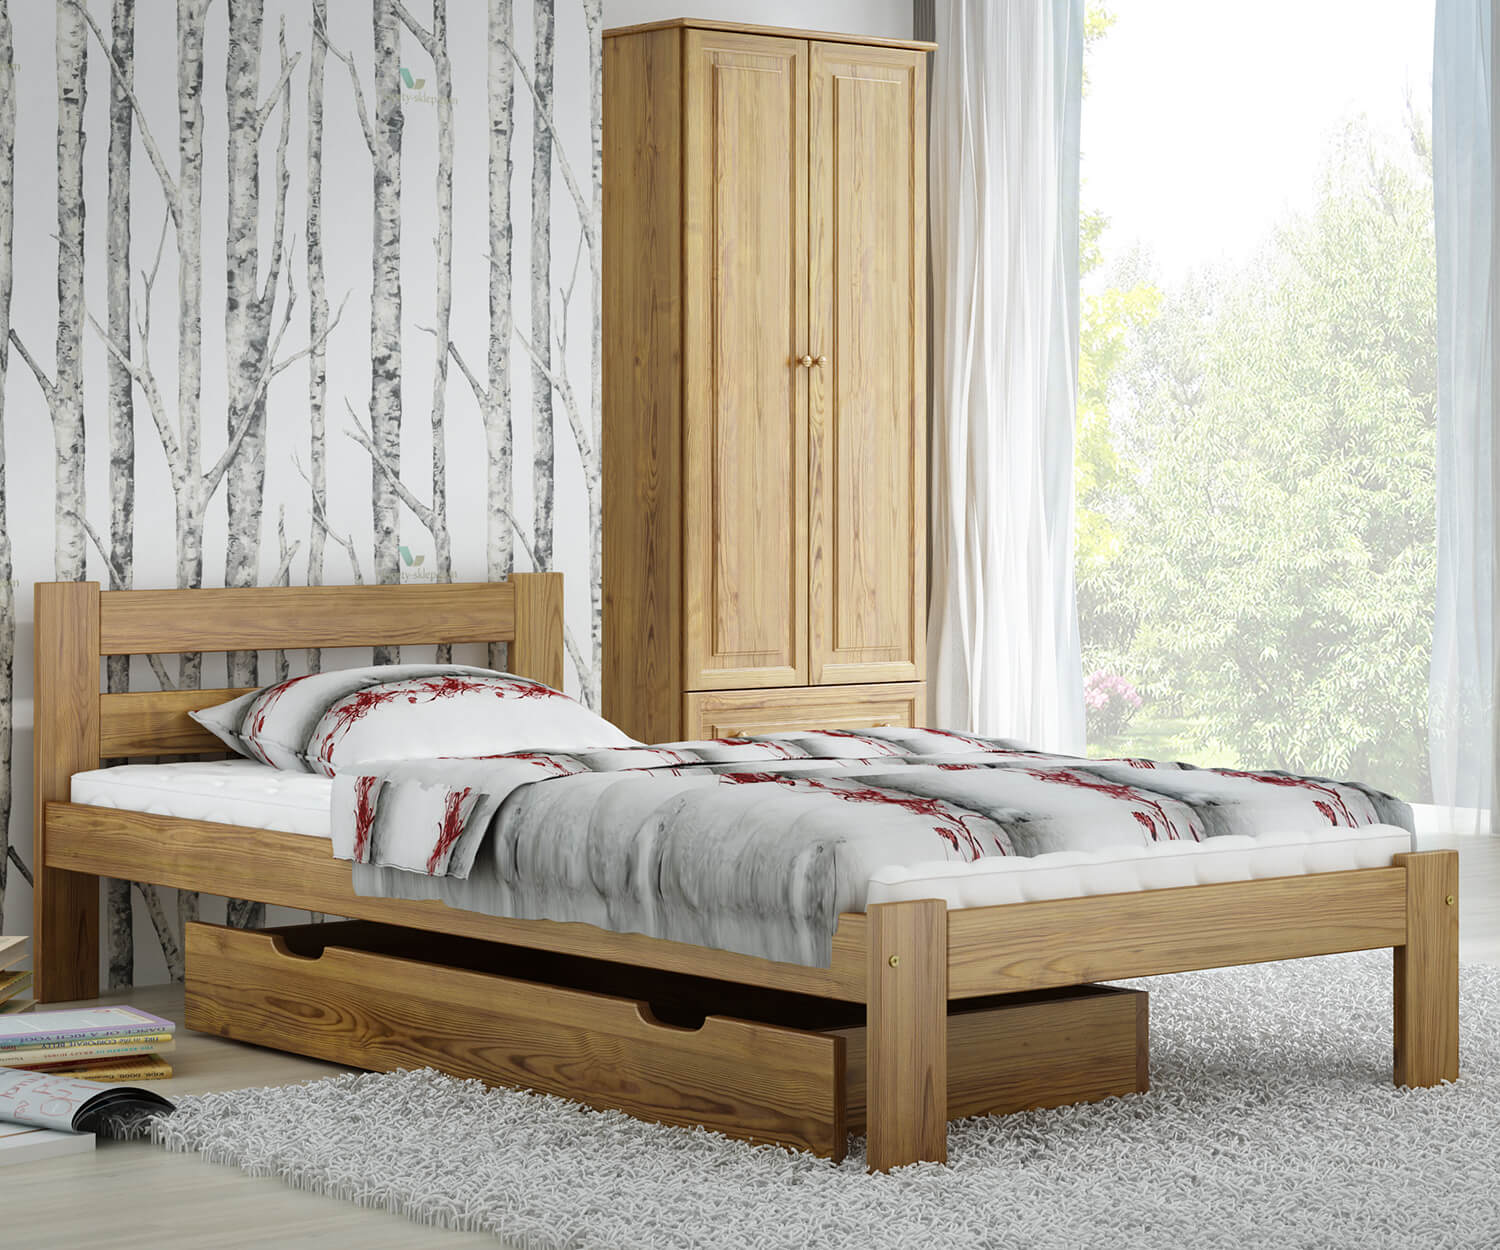 Giường đơn 1m đẹp sẽ đem đến không gian phòng ngủ của bạn vẻ đẹp tinh tế và sang trọng. Với mẫu mã đa dạng, thiết kế hiện đại và chất liệu gỗ tự nhiên cao cấp, giường đơn 1m đẹp sẽ để lại ấn tượng đẹp cho khách hàng và giúp bạn có những giấc ngủ trọn vẹn và thoải mái.